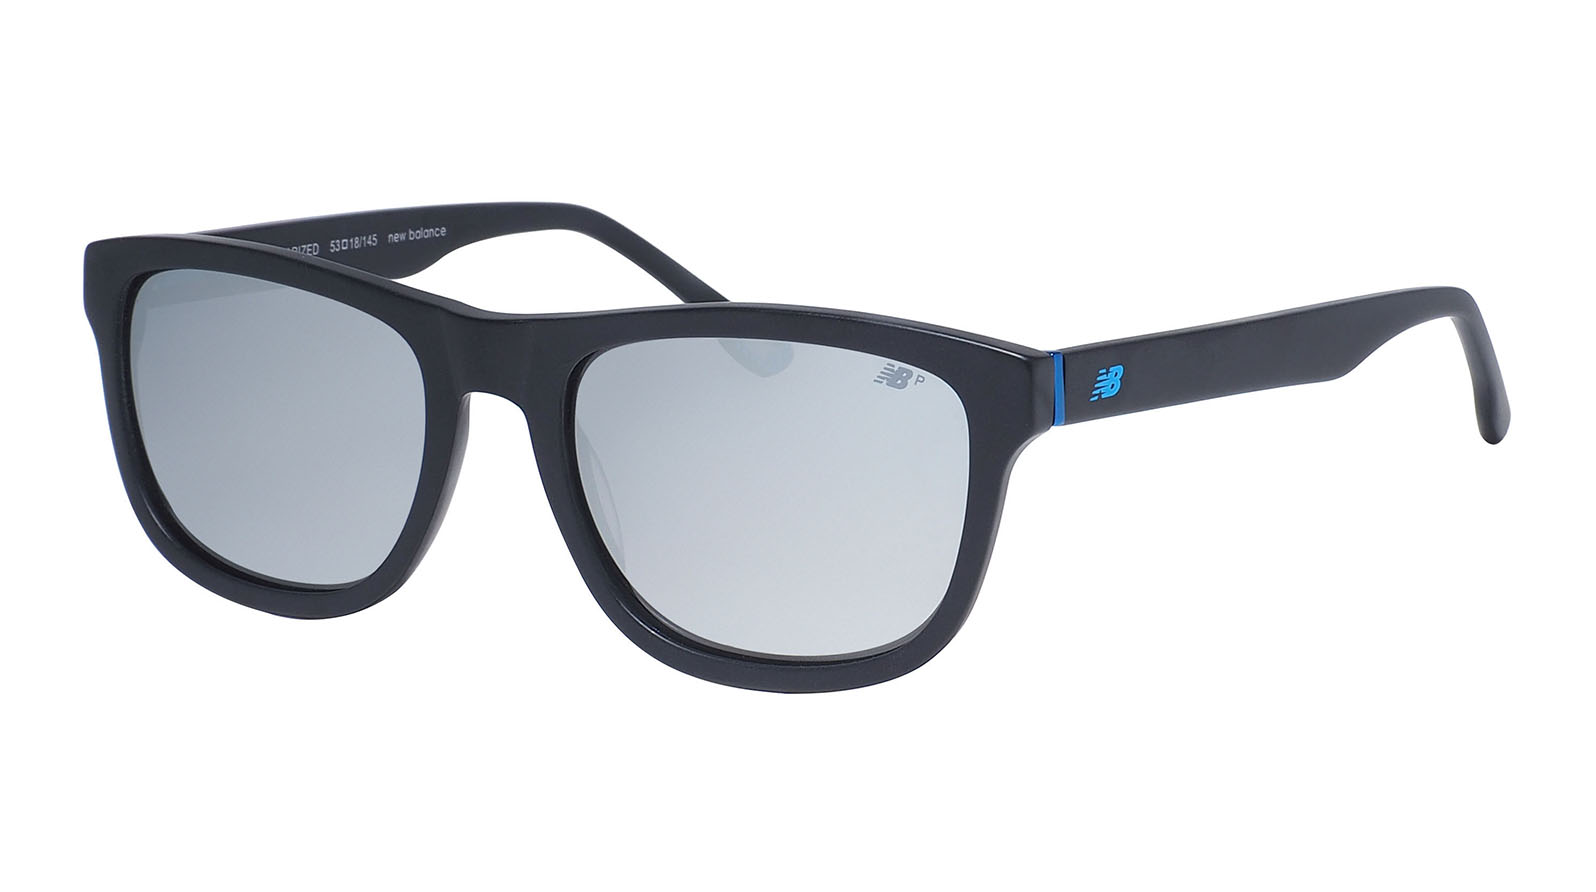 New Balance 6068 1 1pc силиконовый нескользящий полезный мягкий носовой подушечек для очков очки солнцезащитные очки